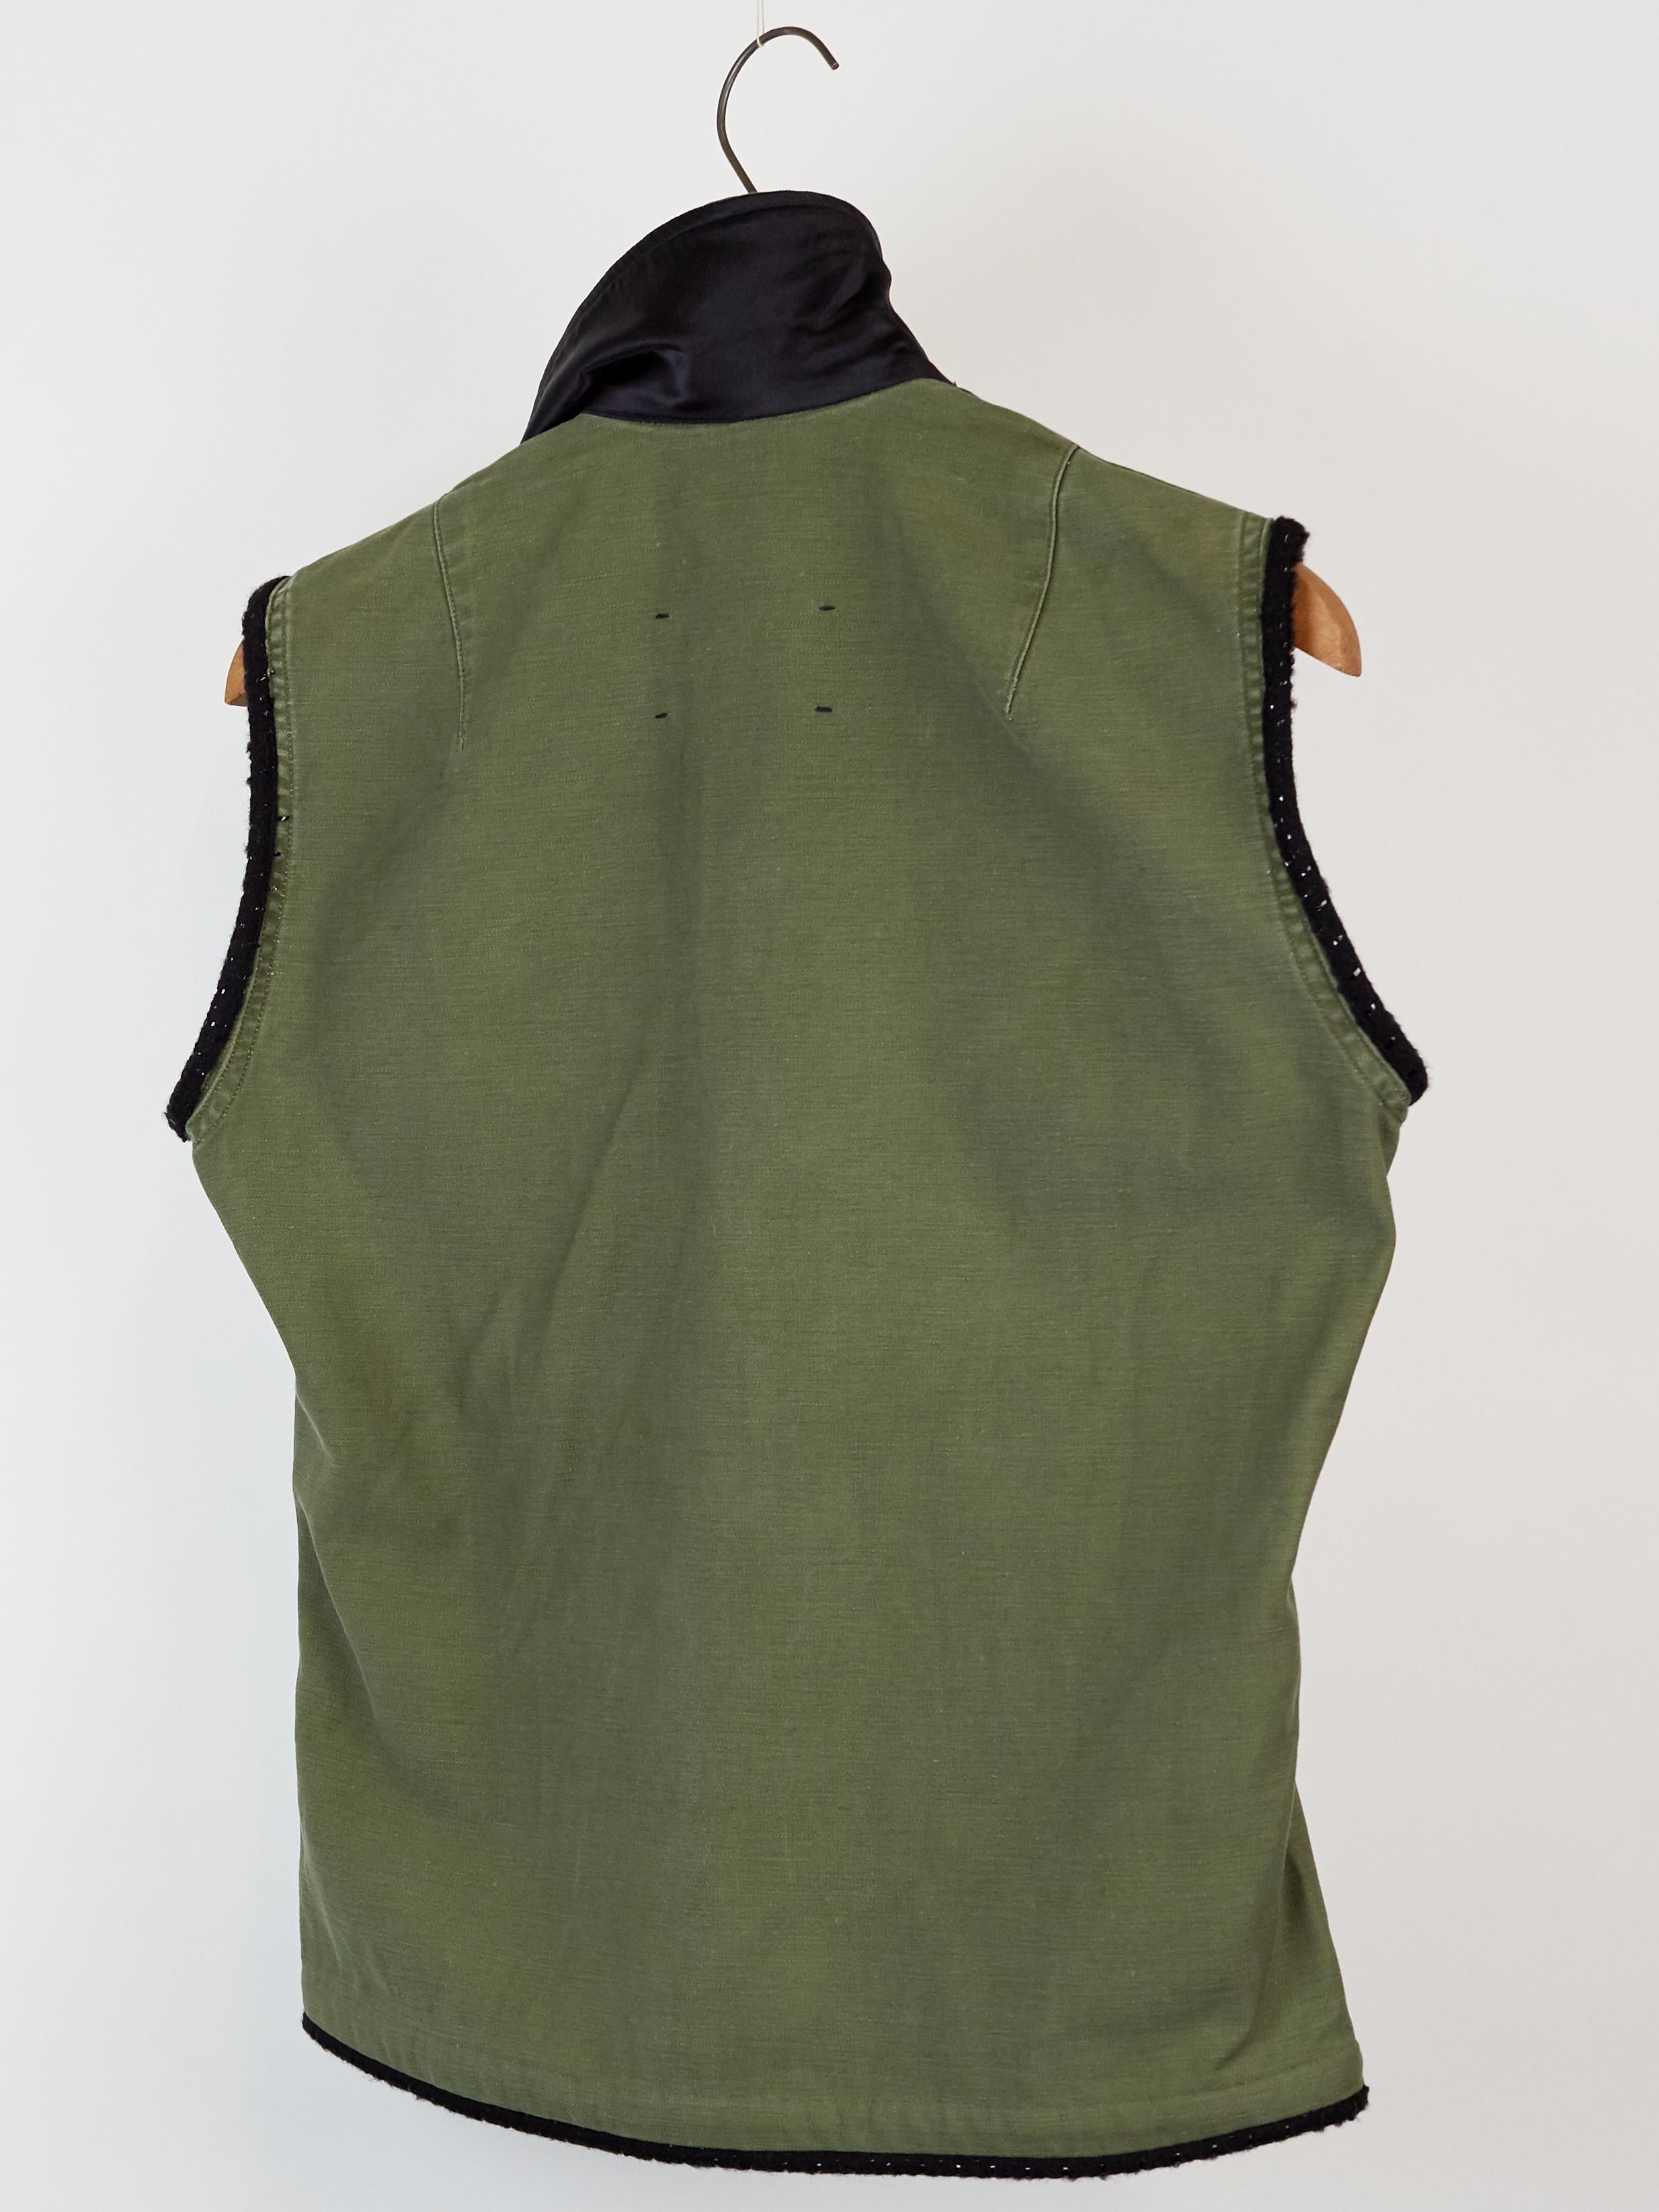 army green sleeveless jacket